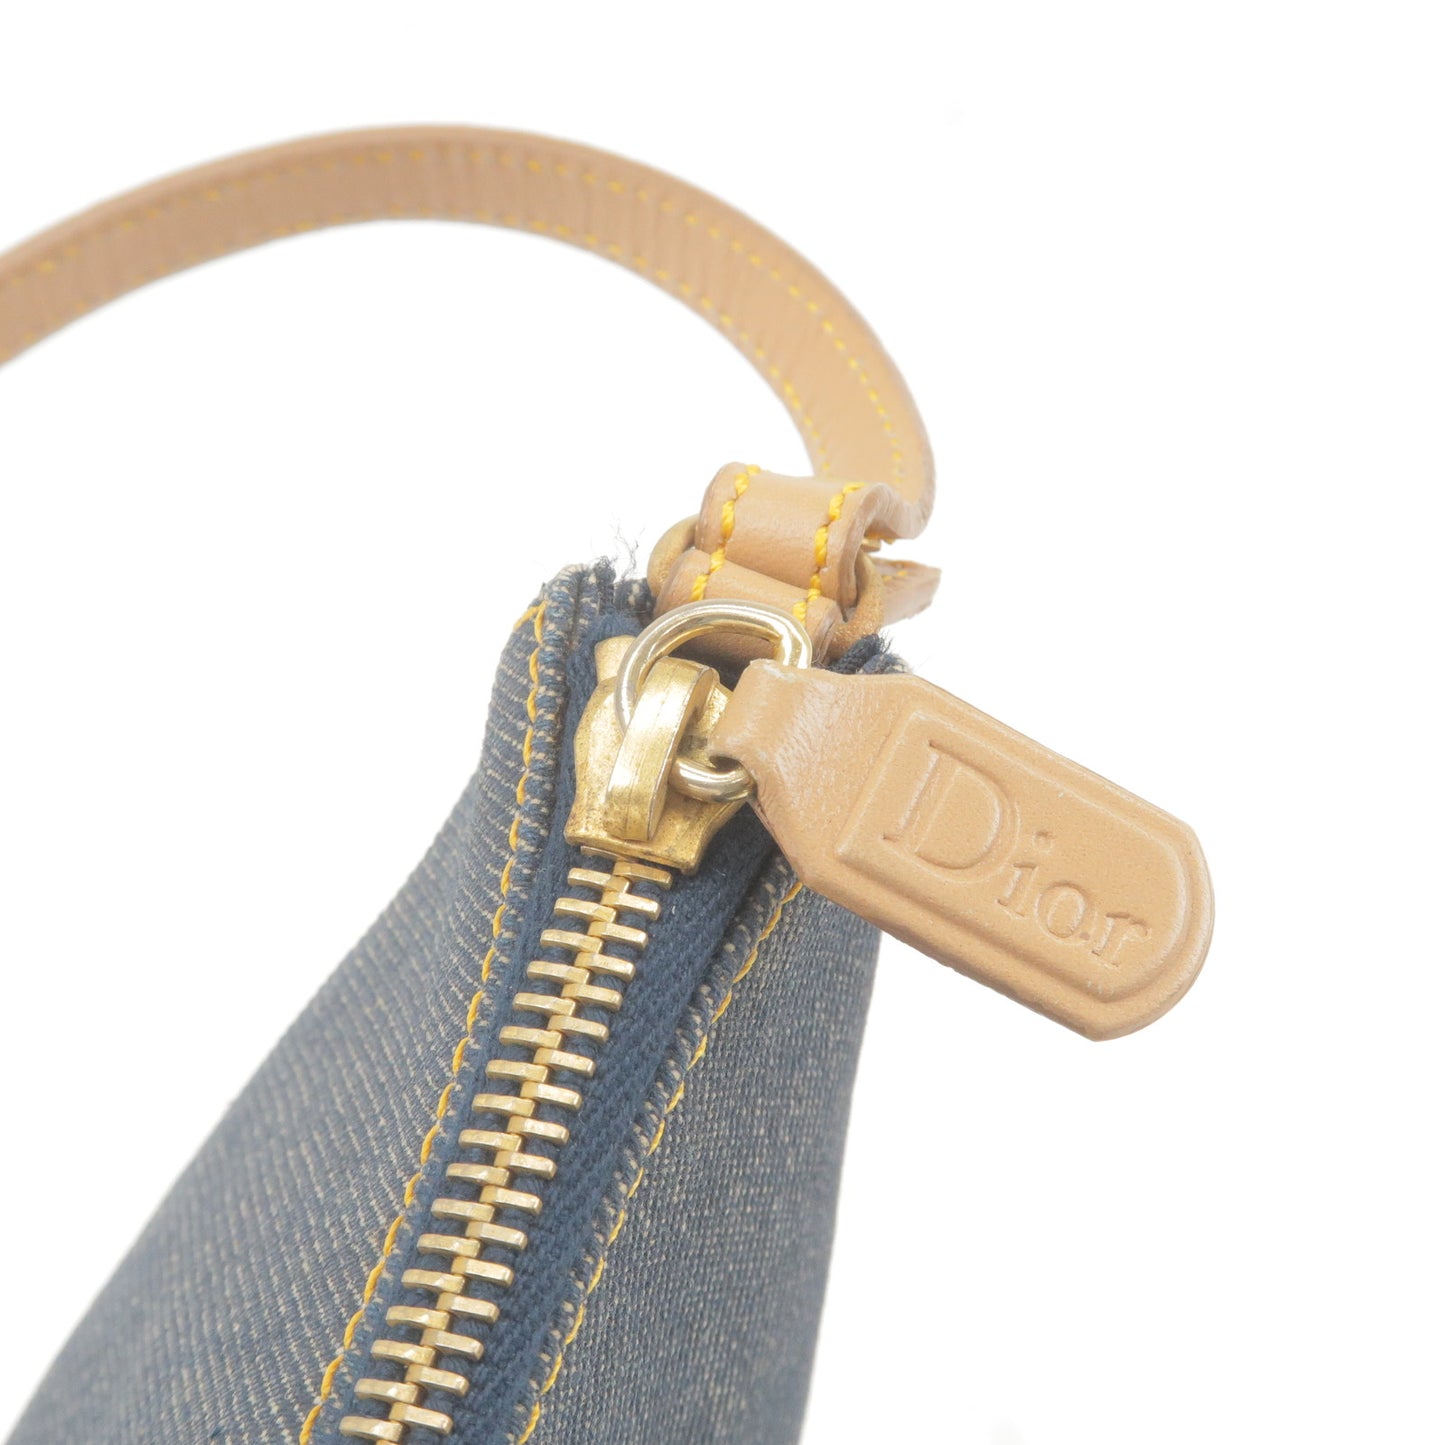 Christian Dior Saddle Bag Denim Leather Shoulder Bag Navy Beige